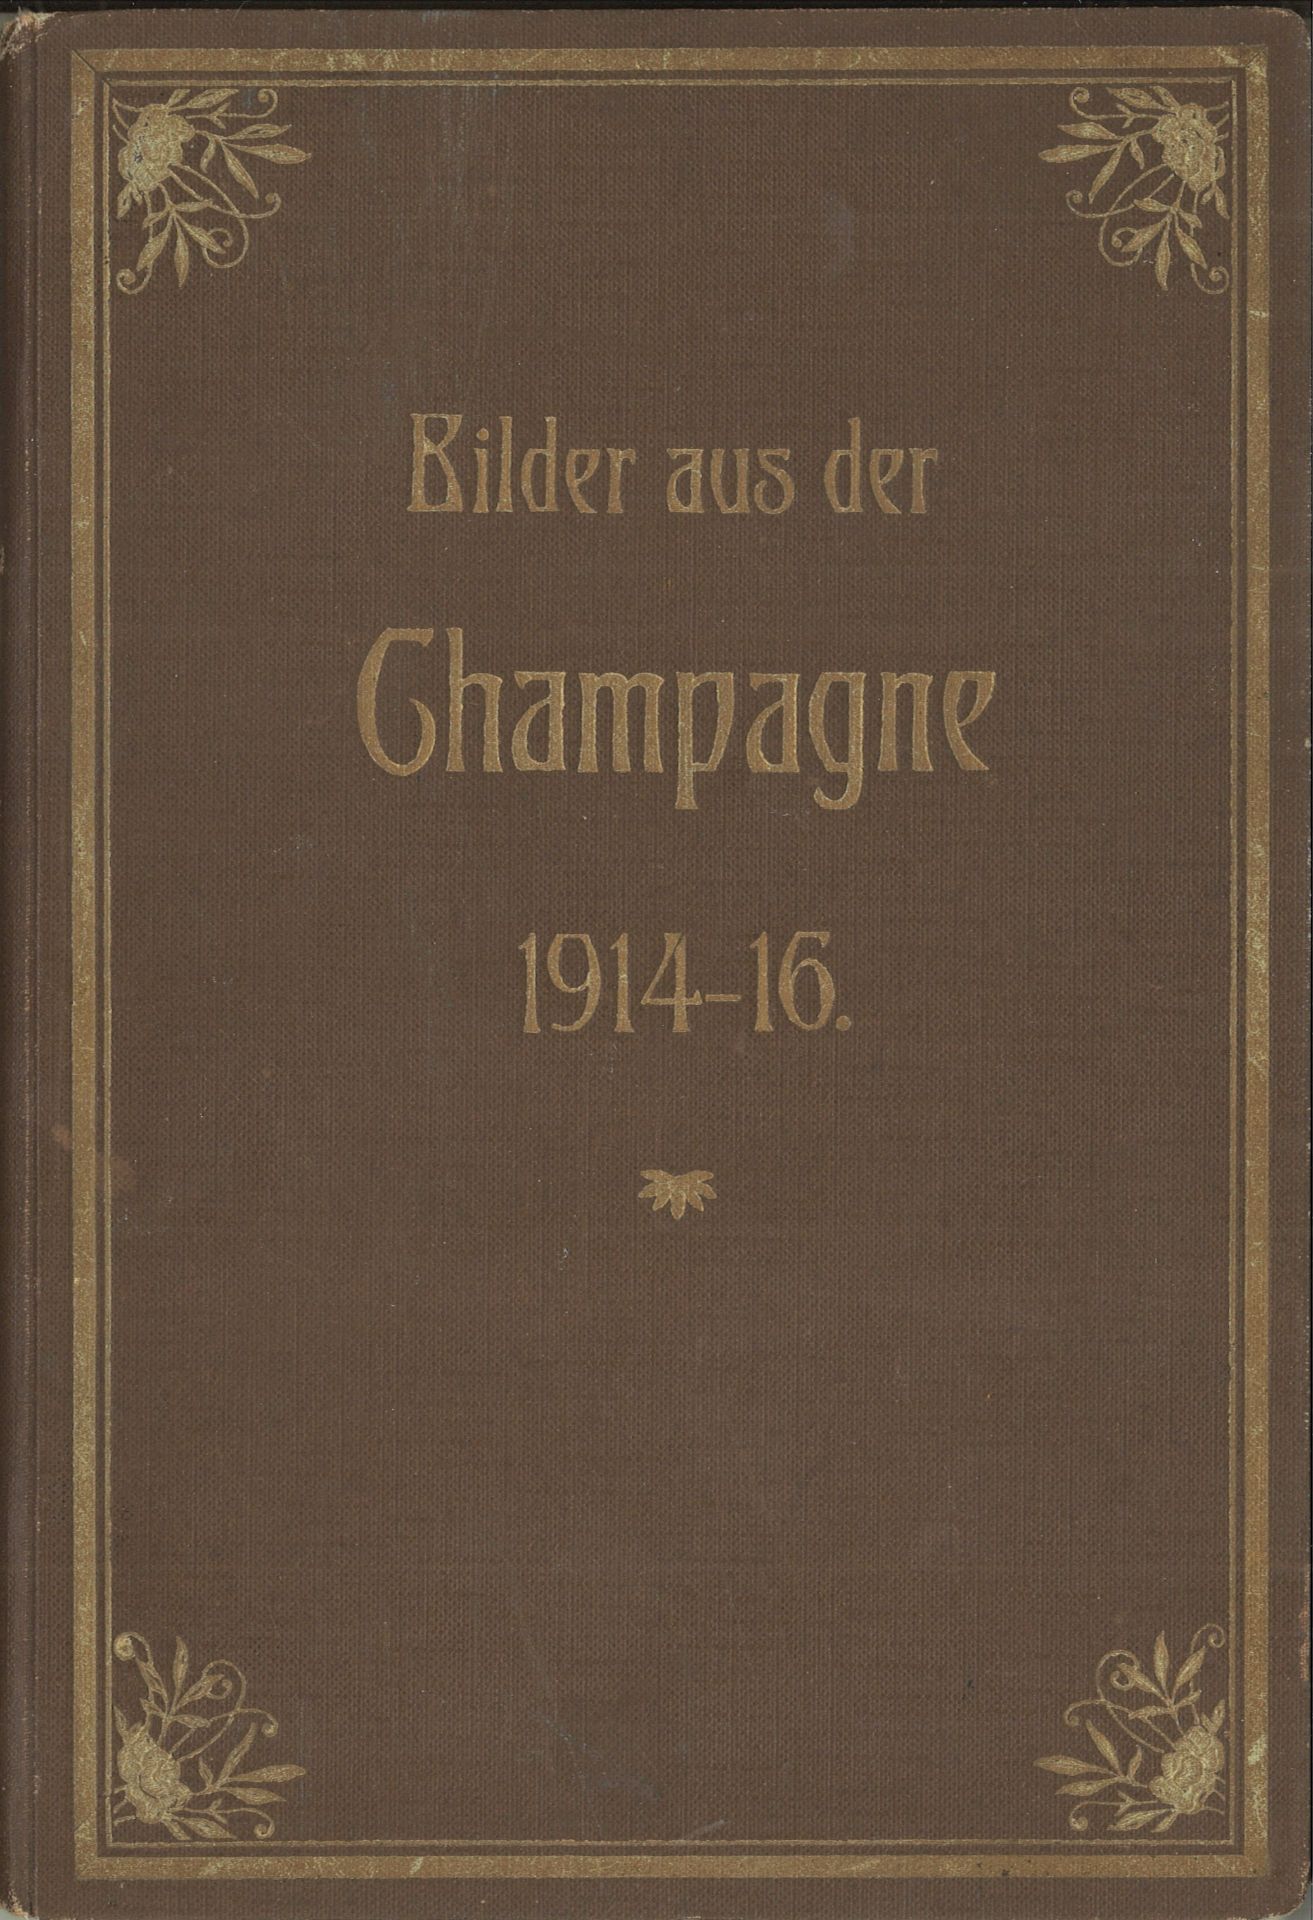 "Bilder aus der Champagne" 1914-1916, den tapferen Champagne-Kriegern gewidmet, sowie weitere